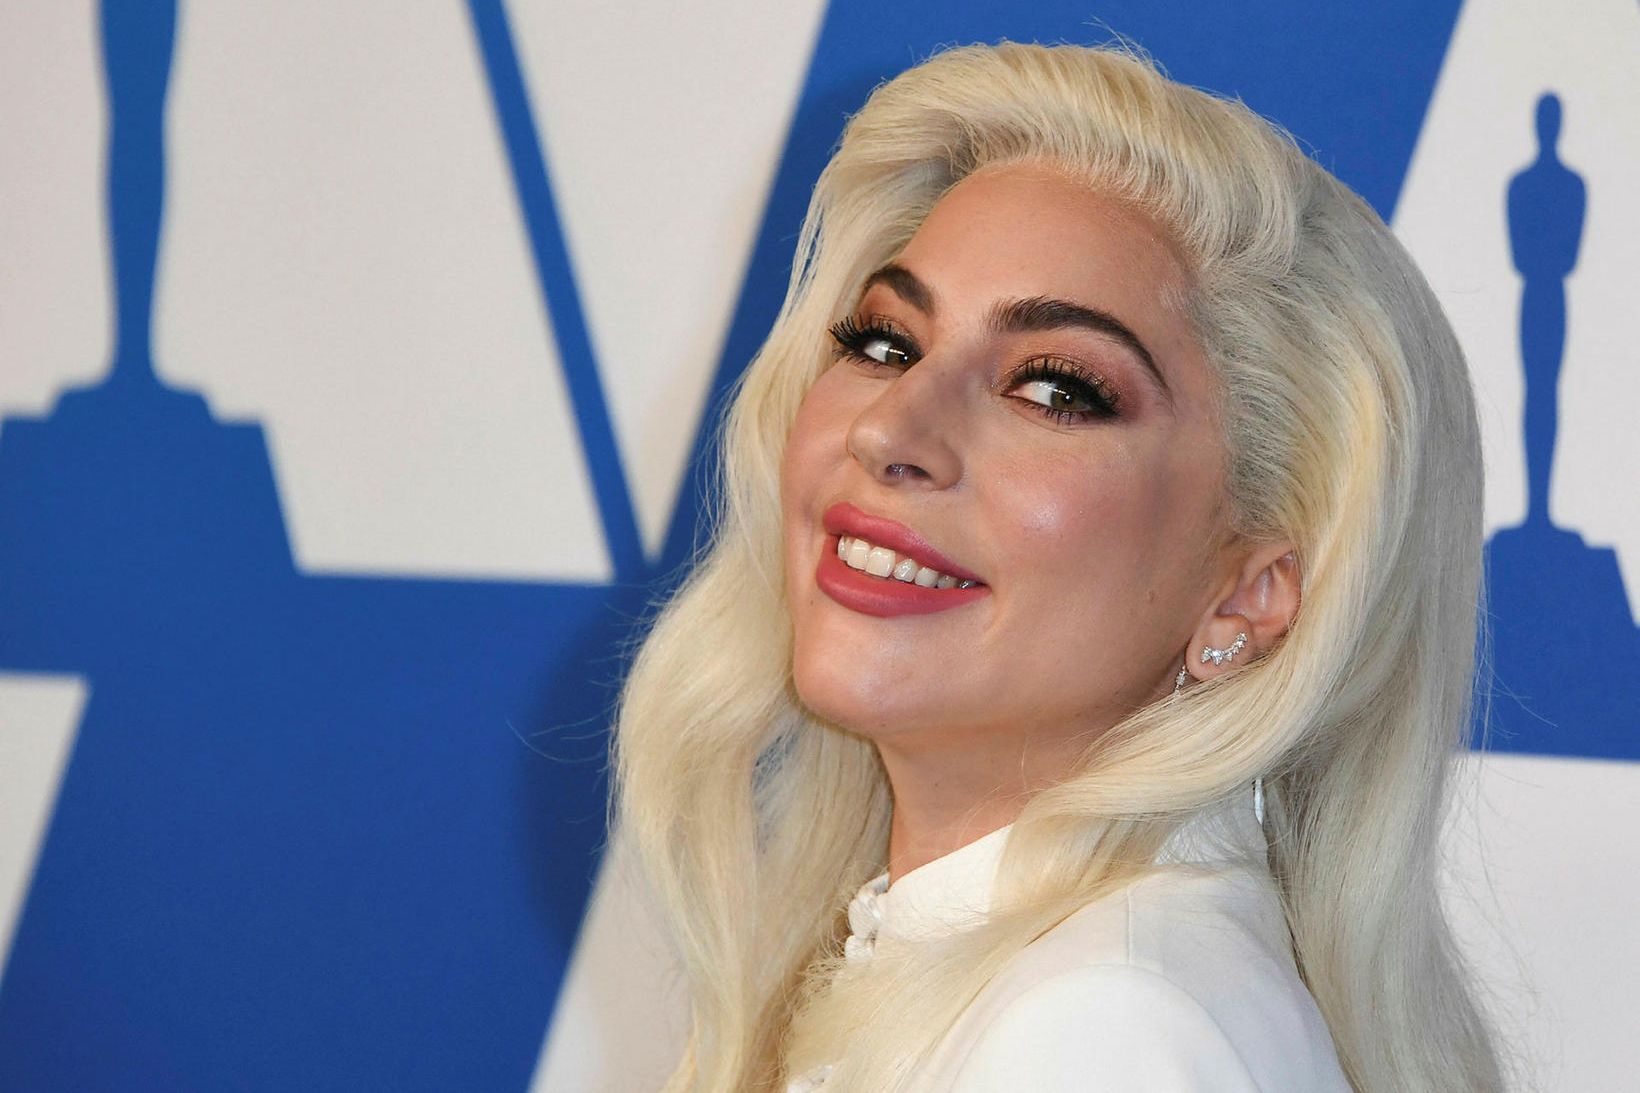 Fimm manns voru handtekin fyrir að stela hundum Lady Gaga.